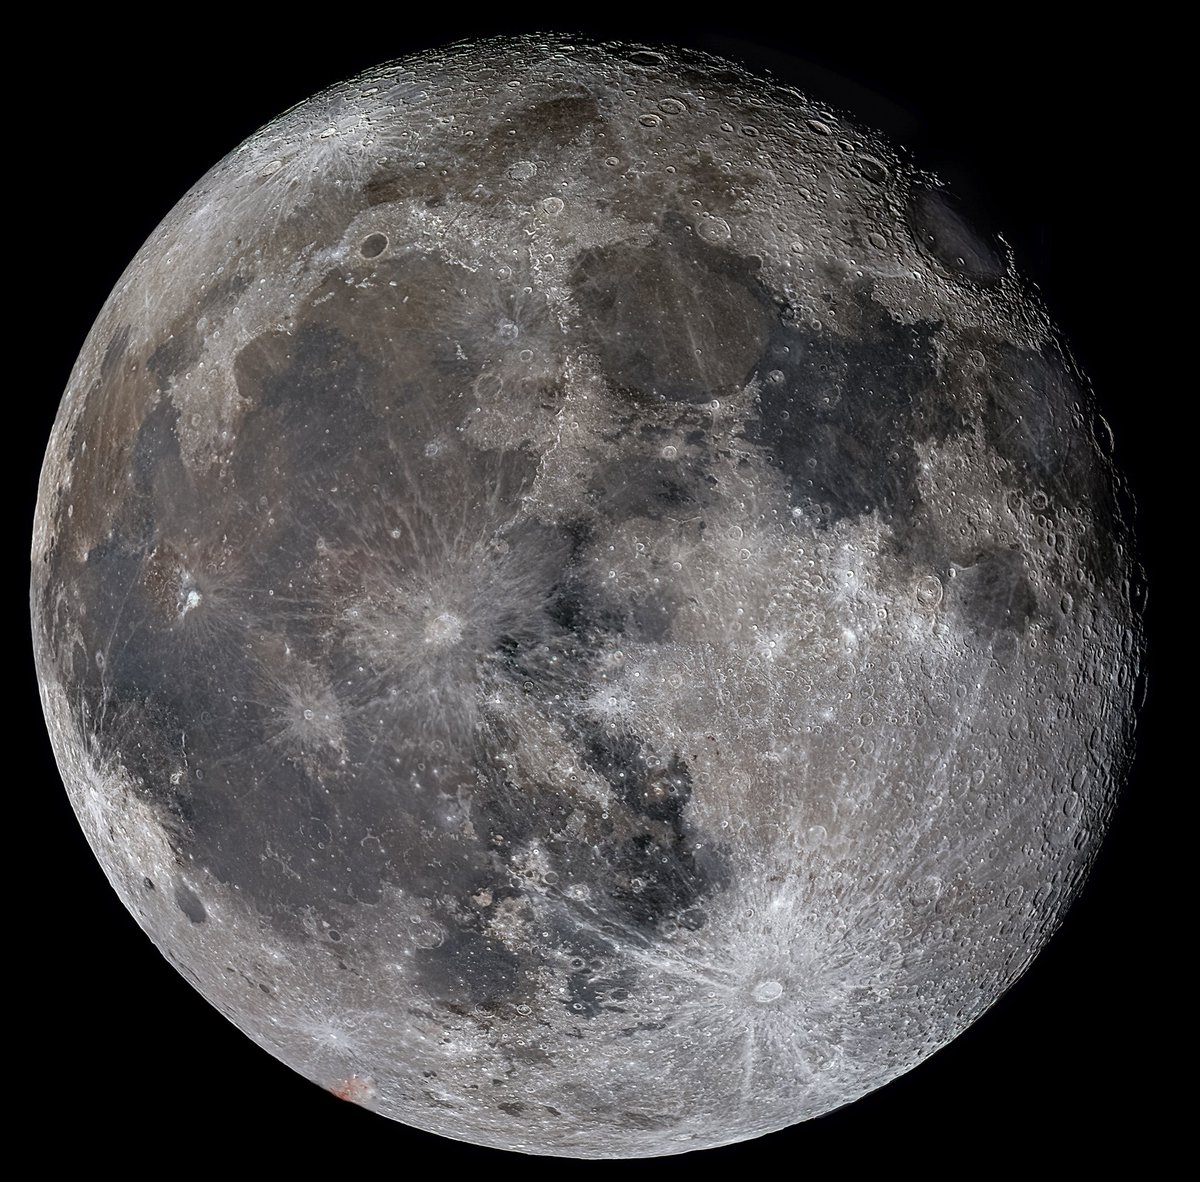 Nuestro satélite, pronto estaremos allí de vuelta....
#cielosESA #Astrophotography #astronomy #Astrophotographer #astronomypictureoftheday #MoonHour #moon